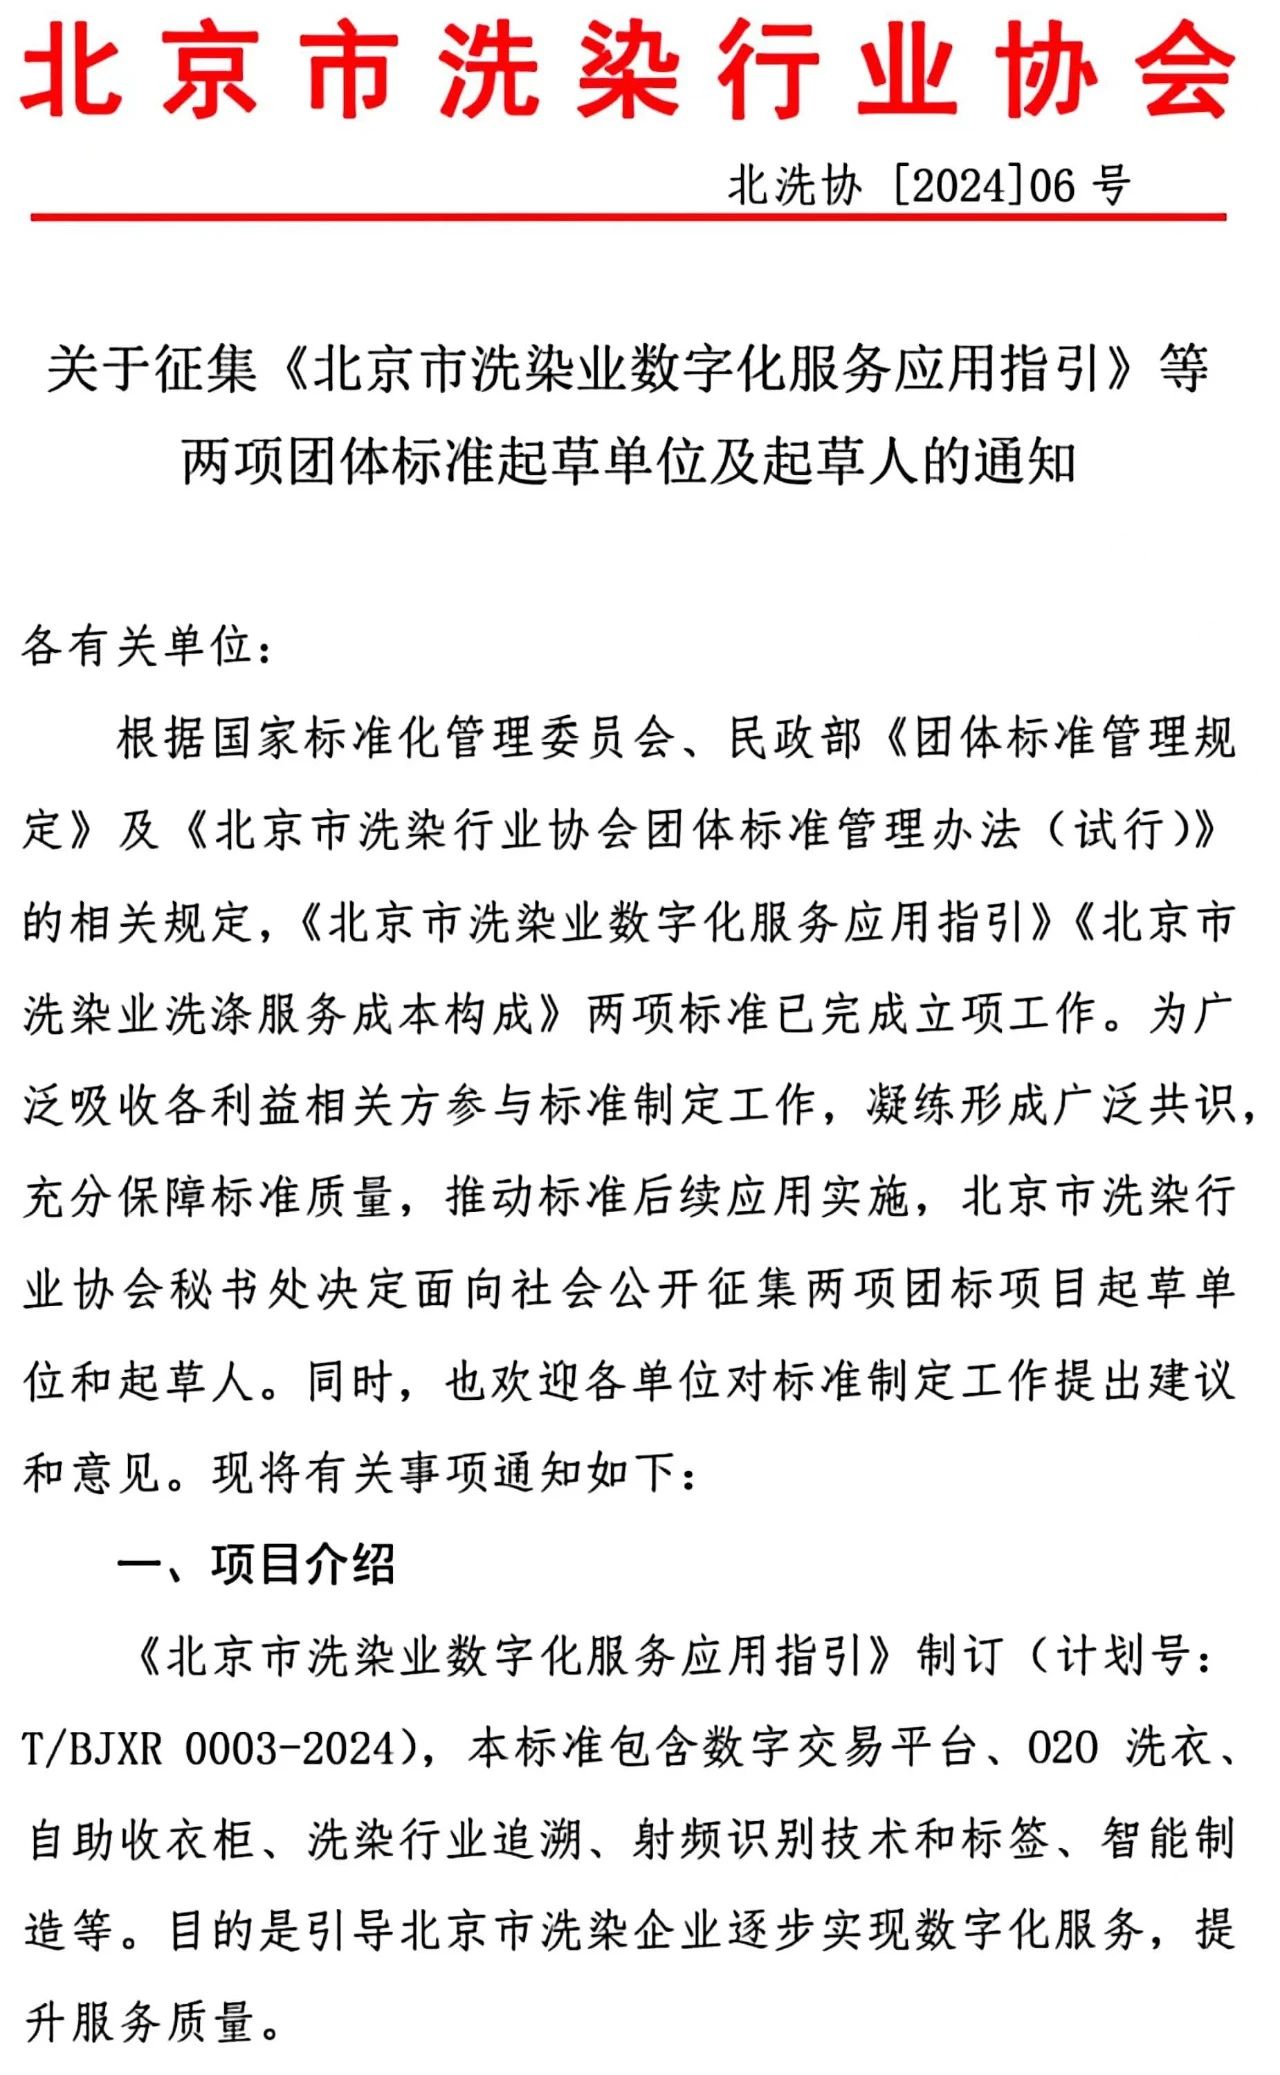 关于征集《北京市洗染业数字化服务应用指引》等两项团体标准起草单位及起草人的通知